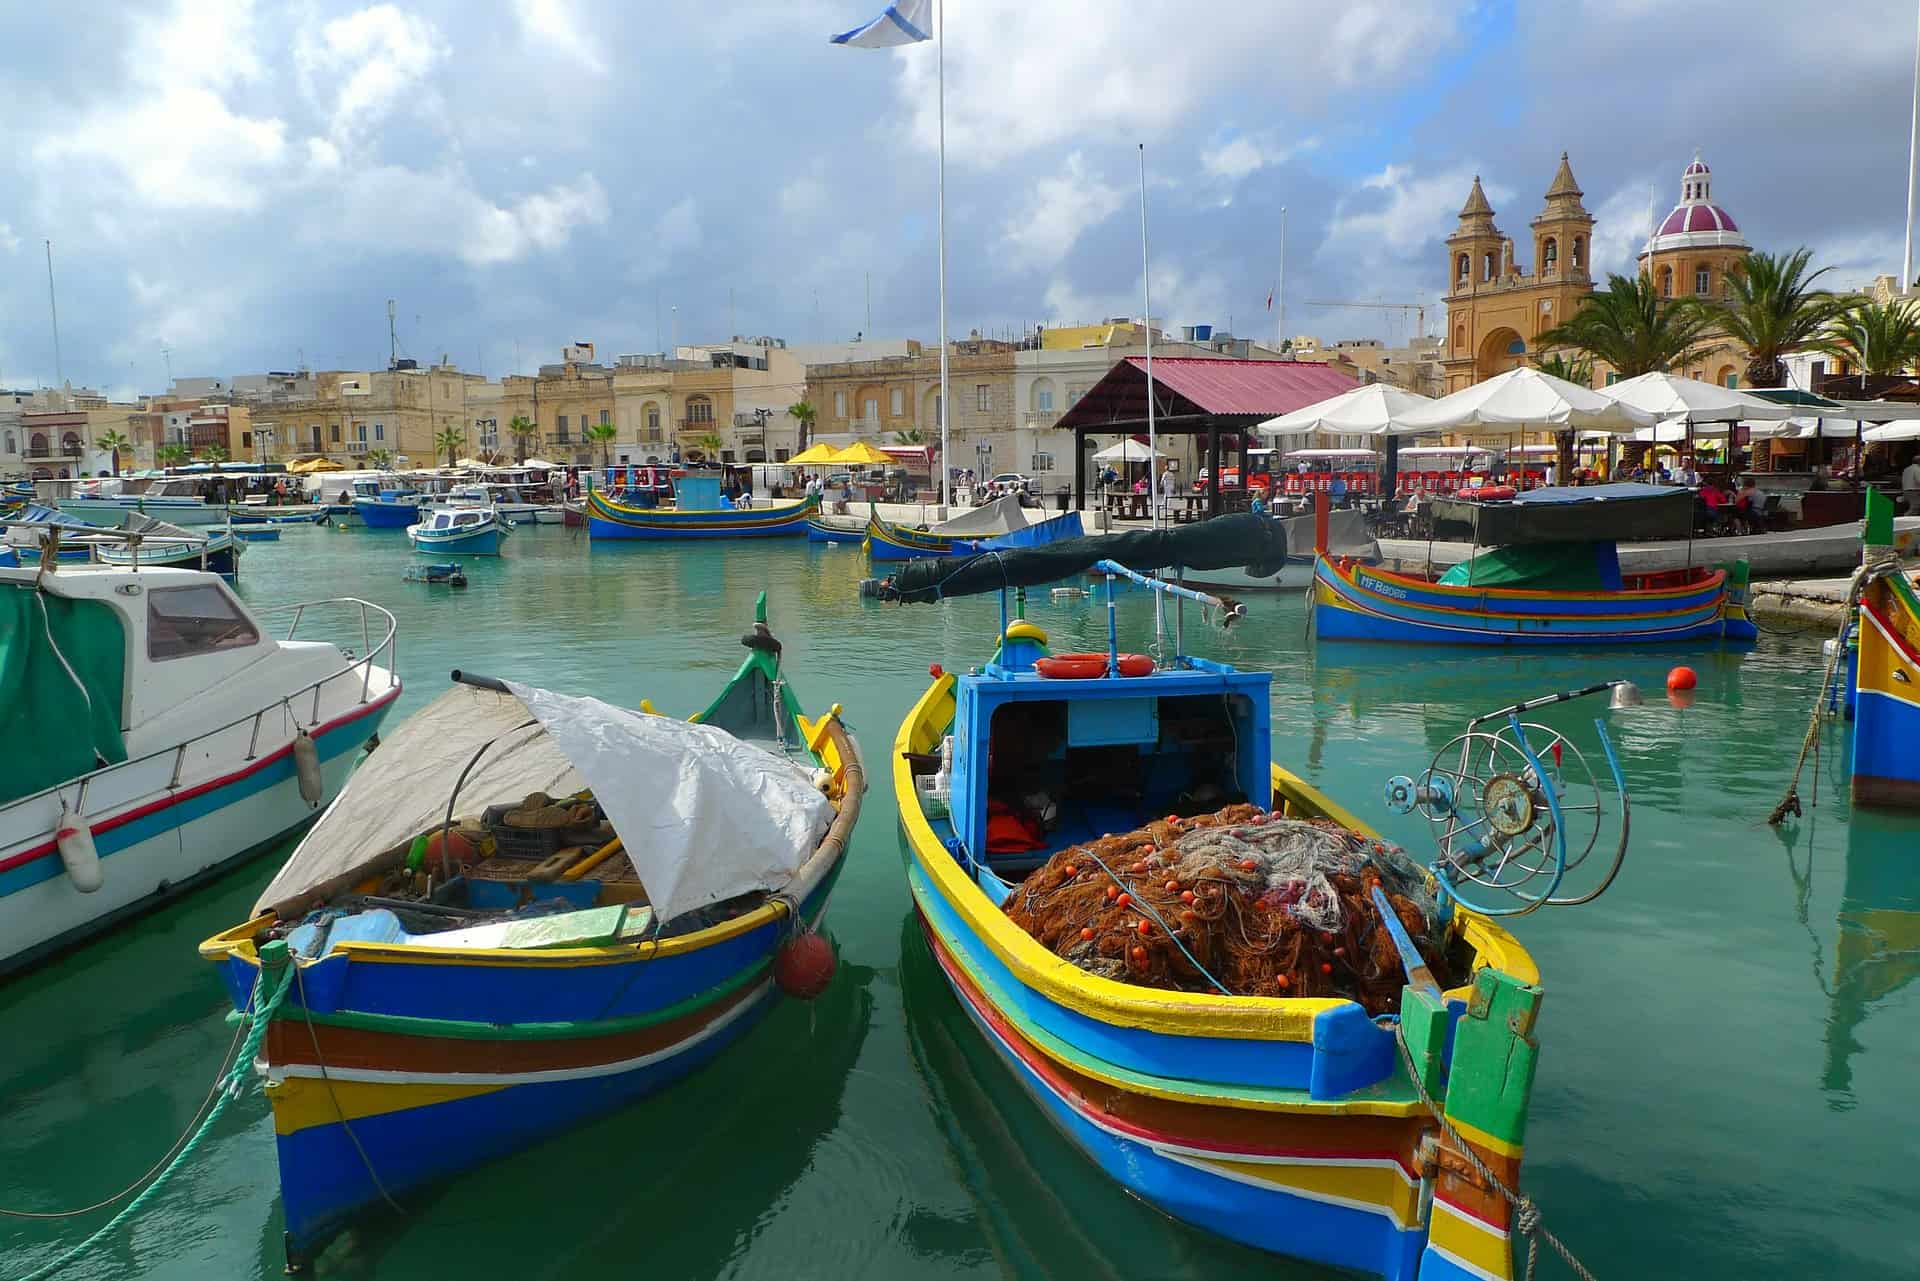 Trouwen op Malta